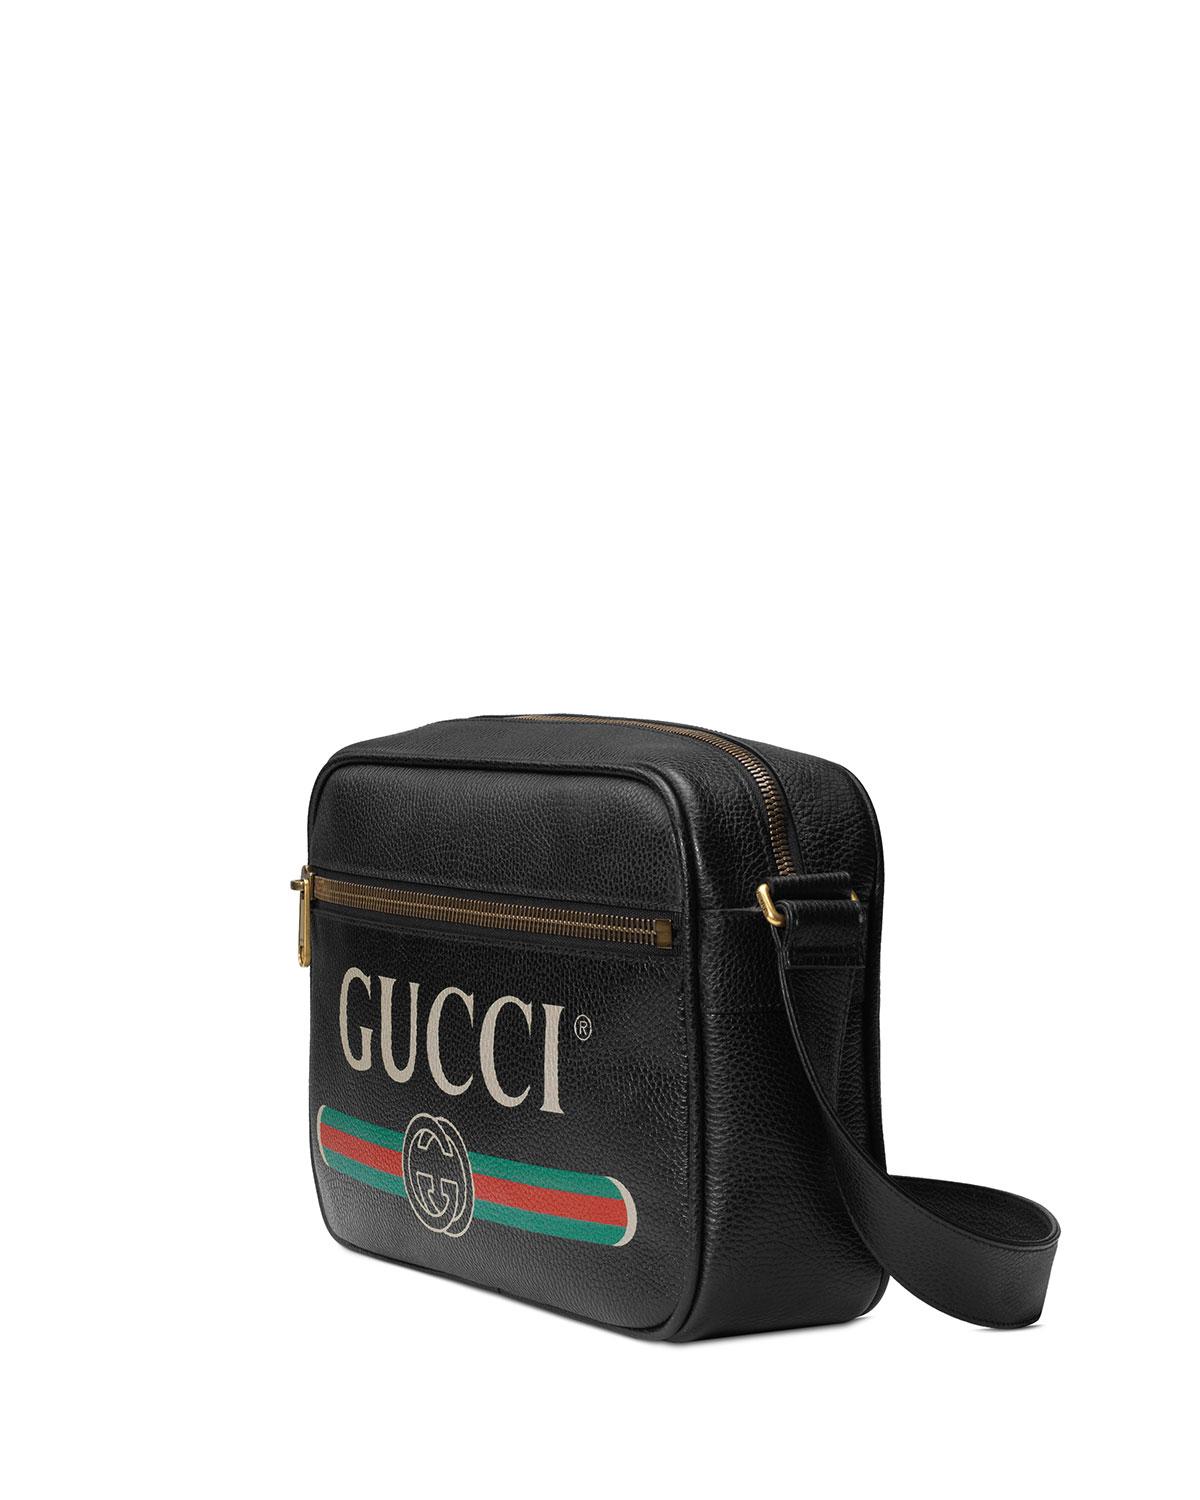 Gucci Men's Retro Leather Shoulder Bag in Black for Men - Lyst